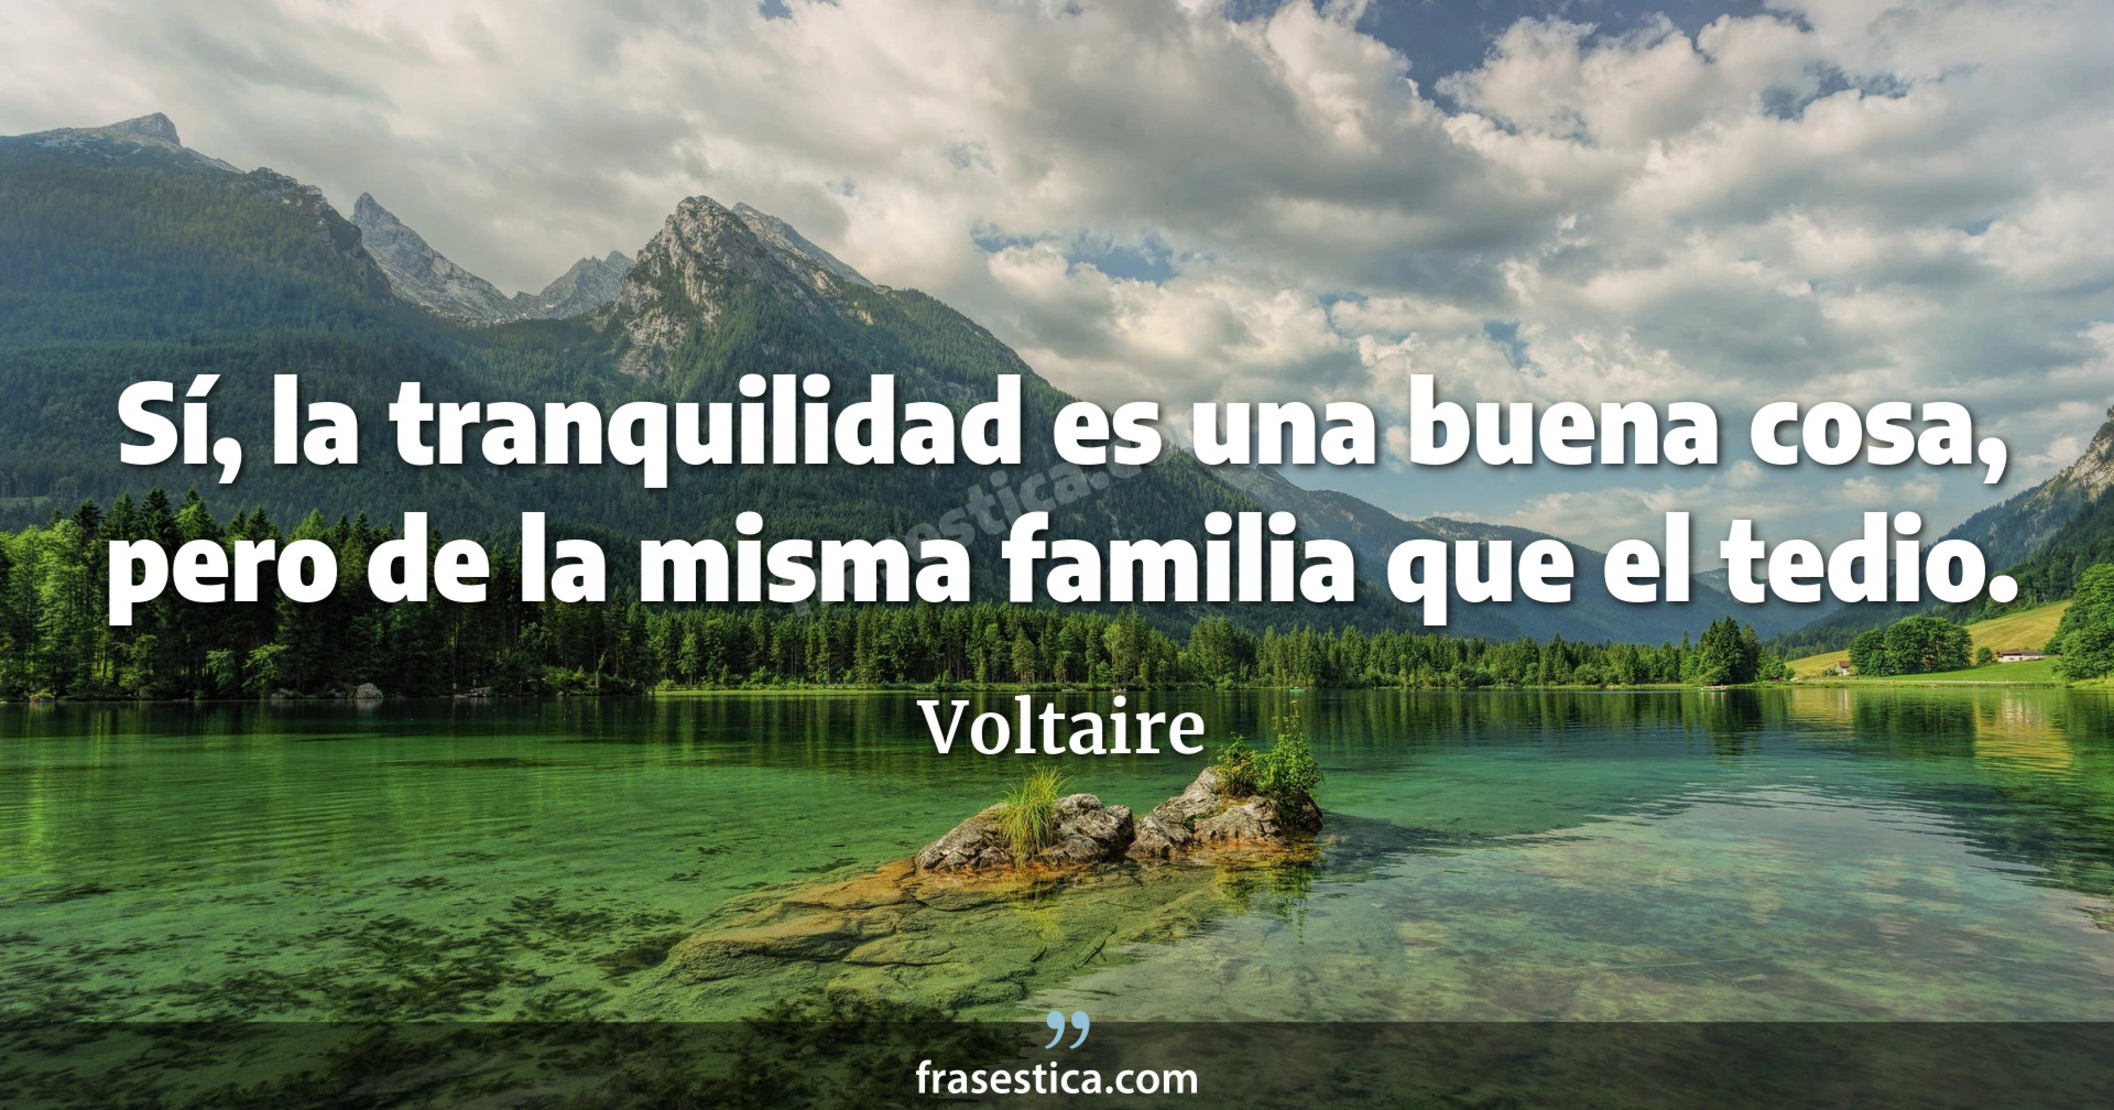 Sí, la tranquilidad es una buena cosa, pero de la misma familia que el tedio. - Voltaire